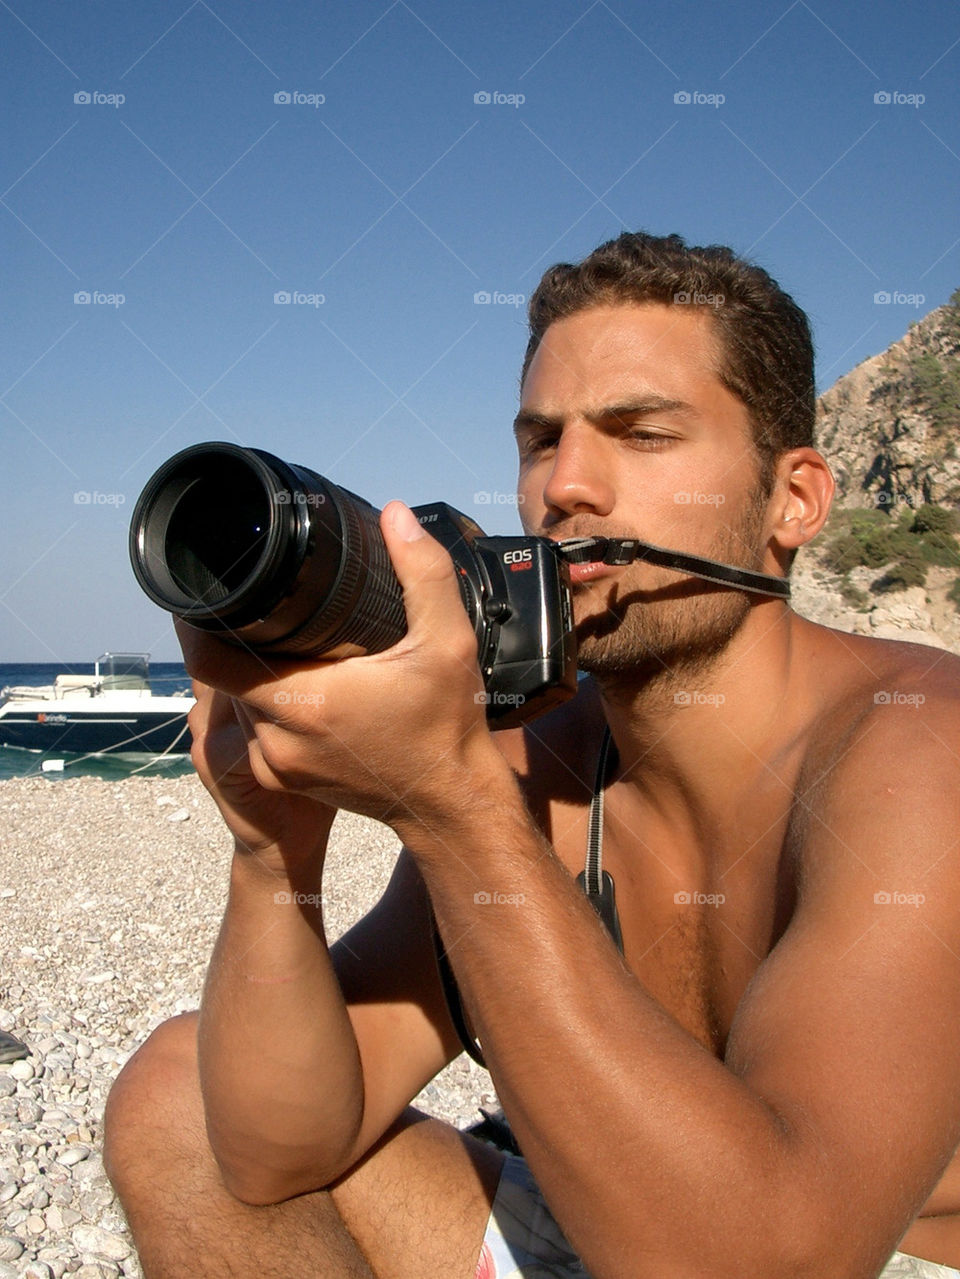 beach model summer man by mrarflox